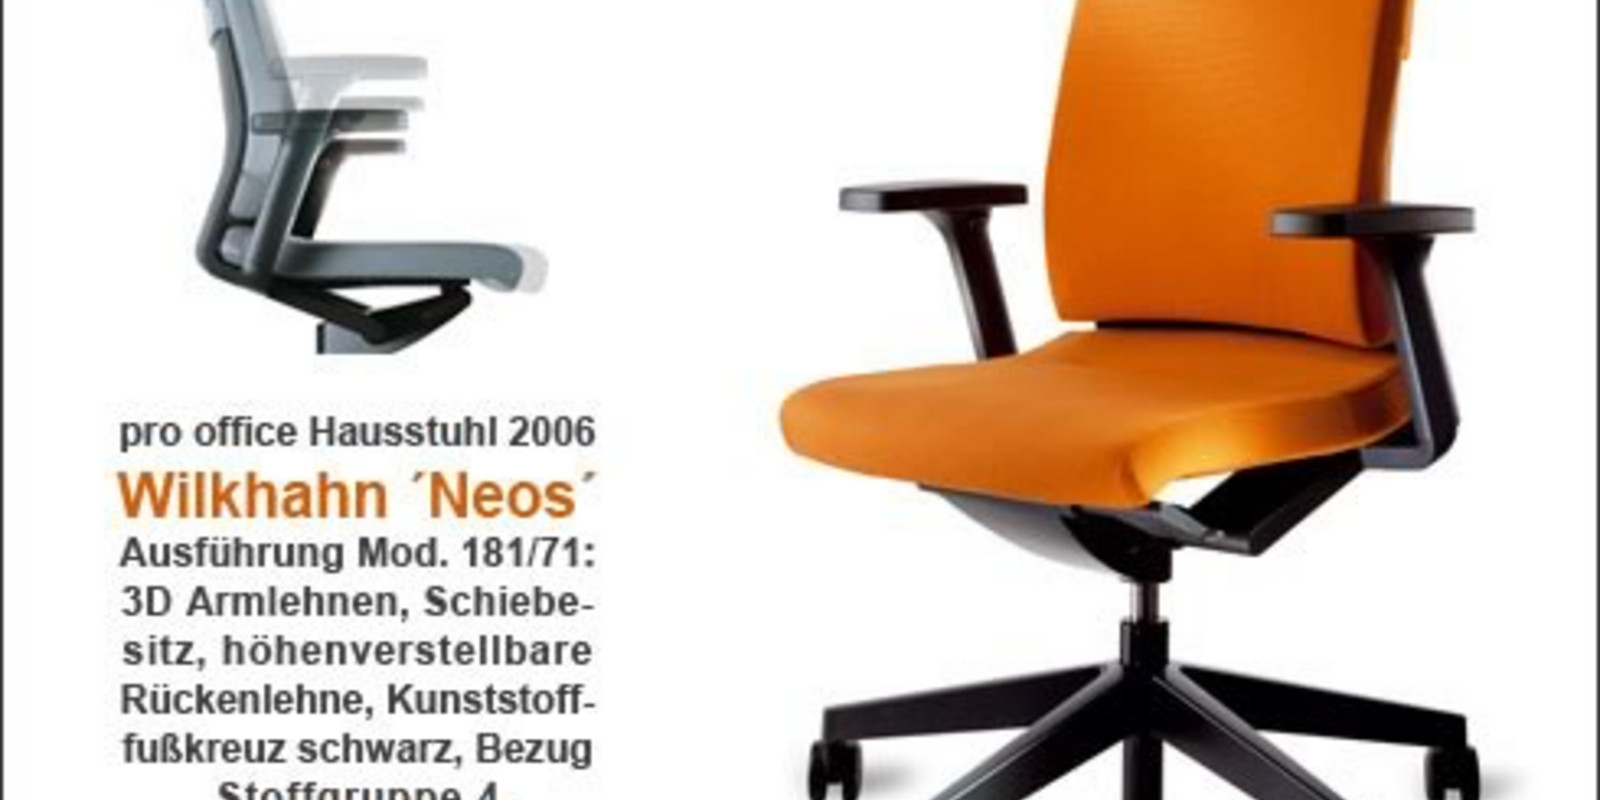 pro office – Hausstuhl 2006